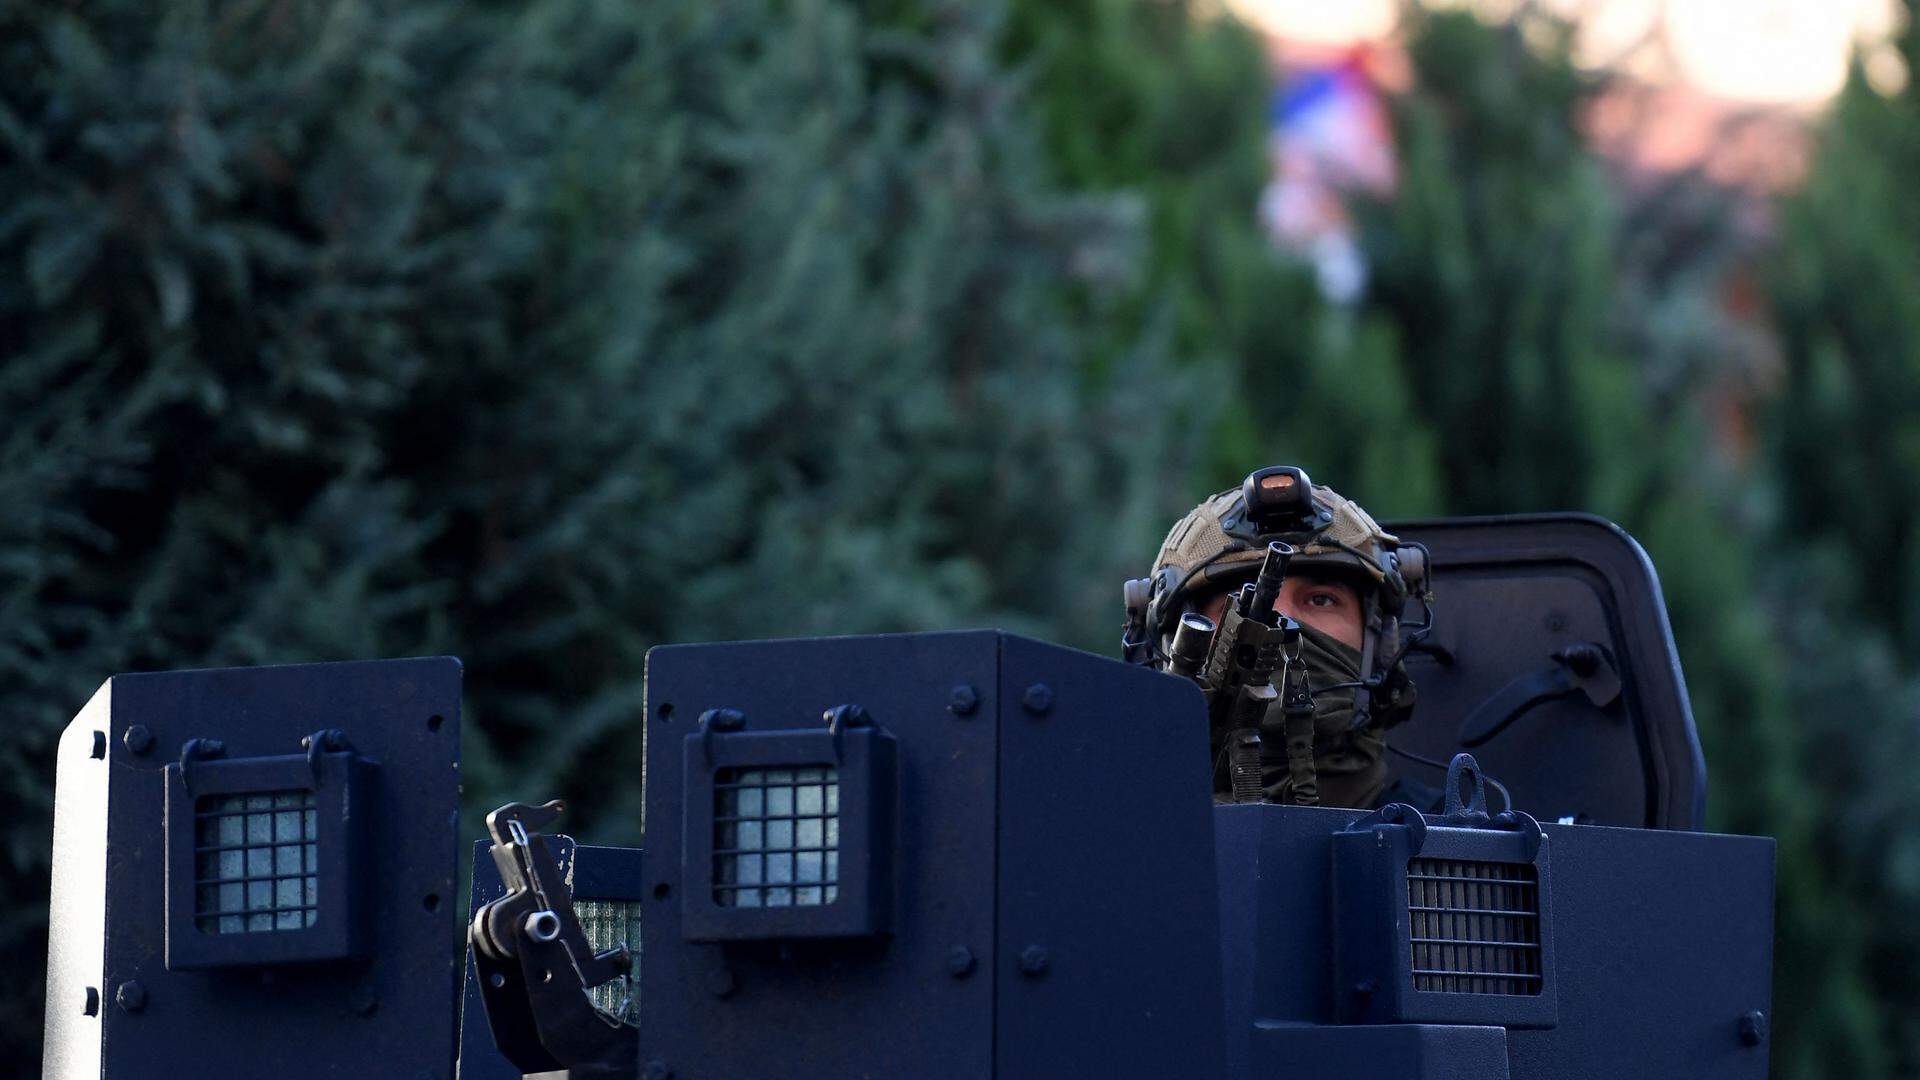 Die Situation eskalierte, nachdem schwer bewaffnete Serben einen kosovarischen Polizisten getötet haben sollen.